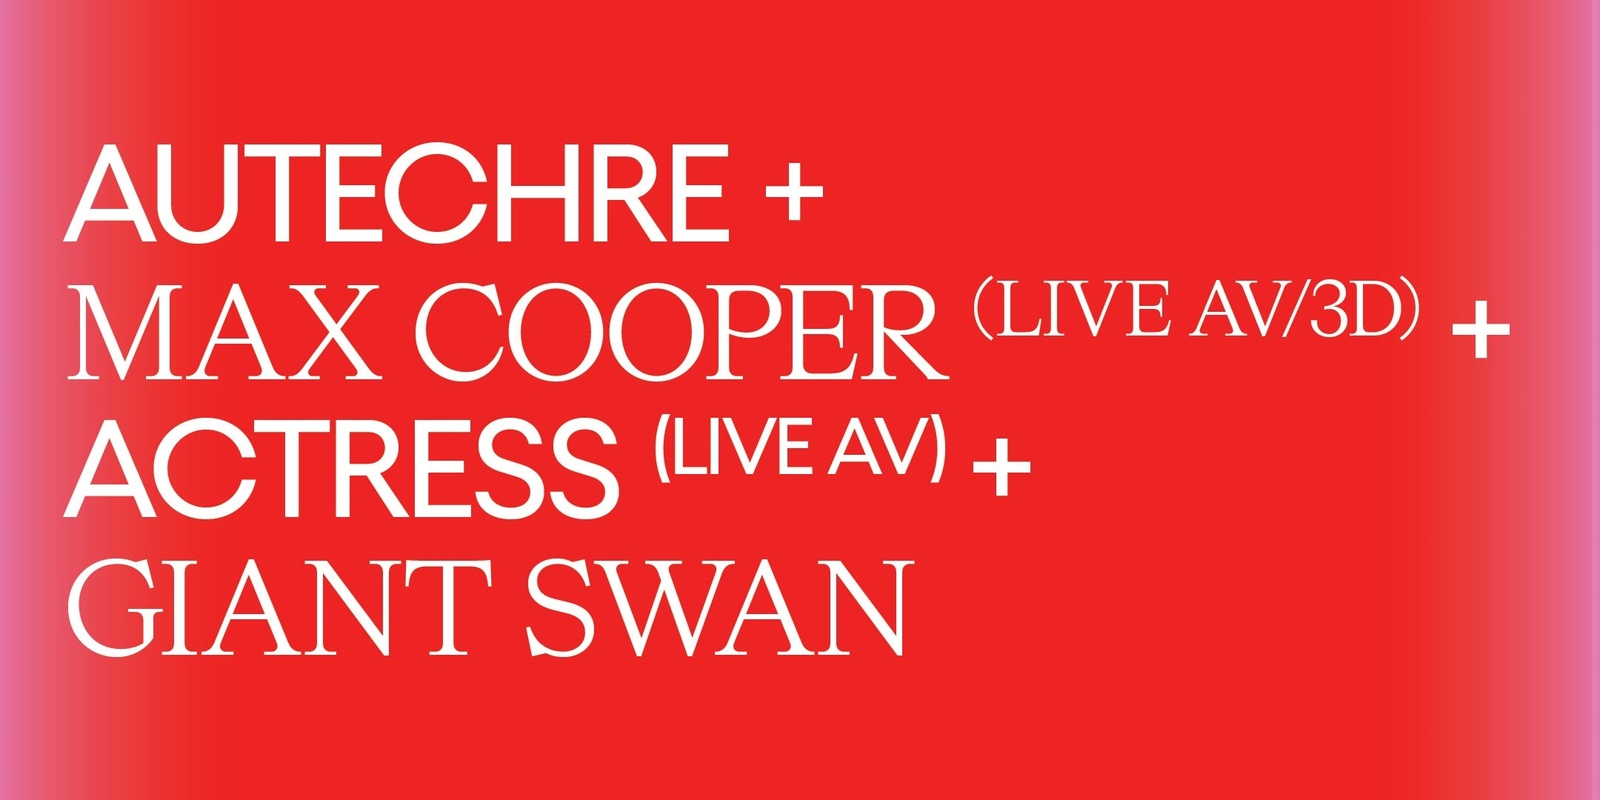 Banner image for Autechre + Max Cooper (Live AV/3D) + Actress (Live AV) + Giant Swan 